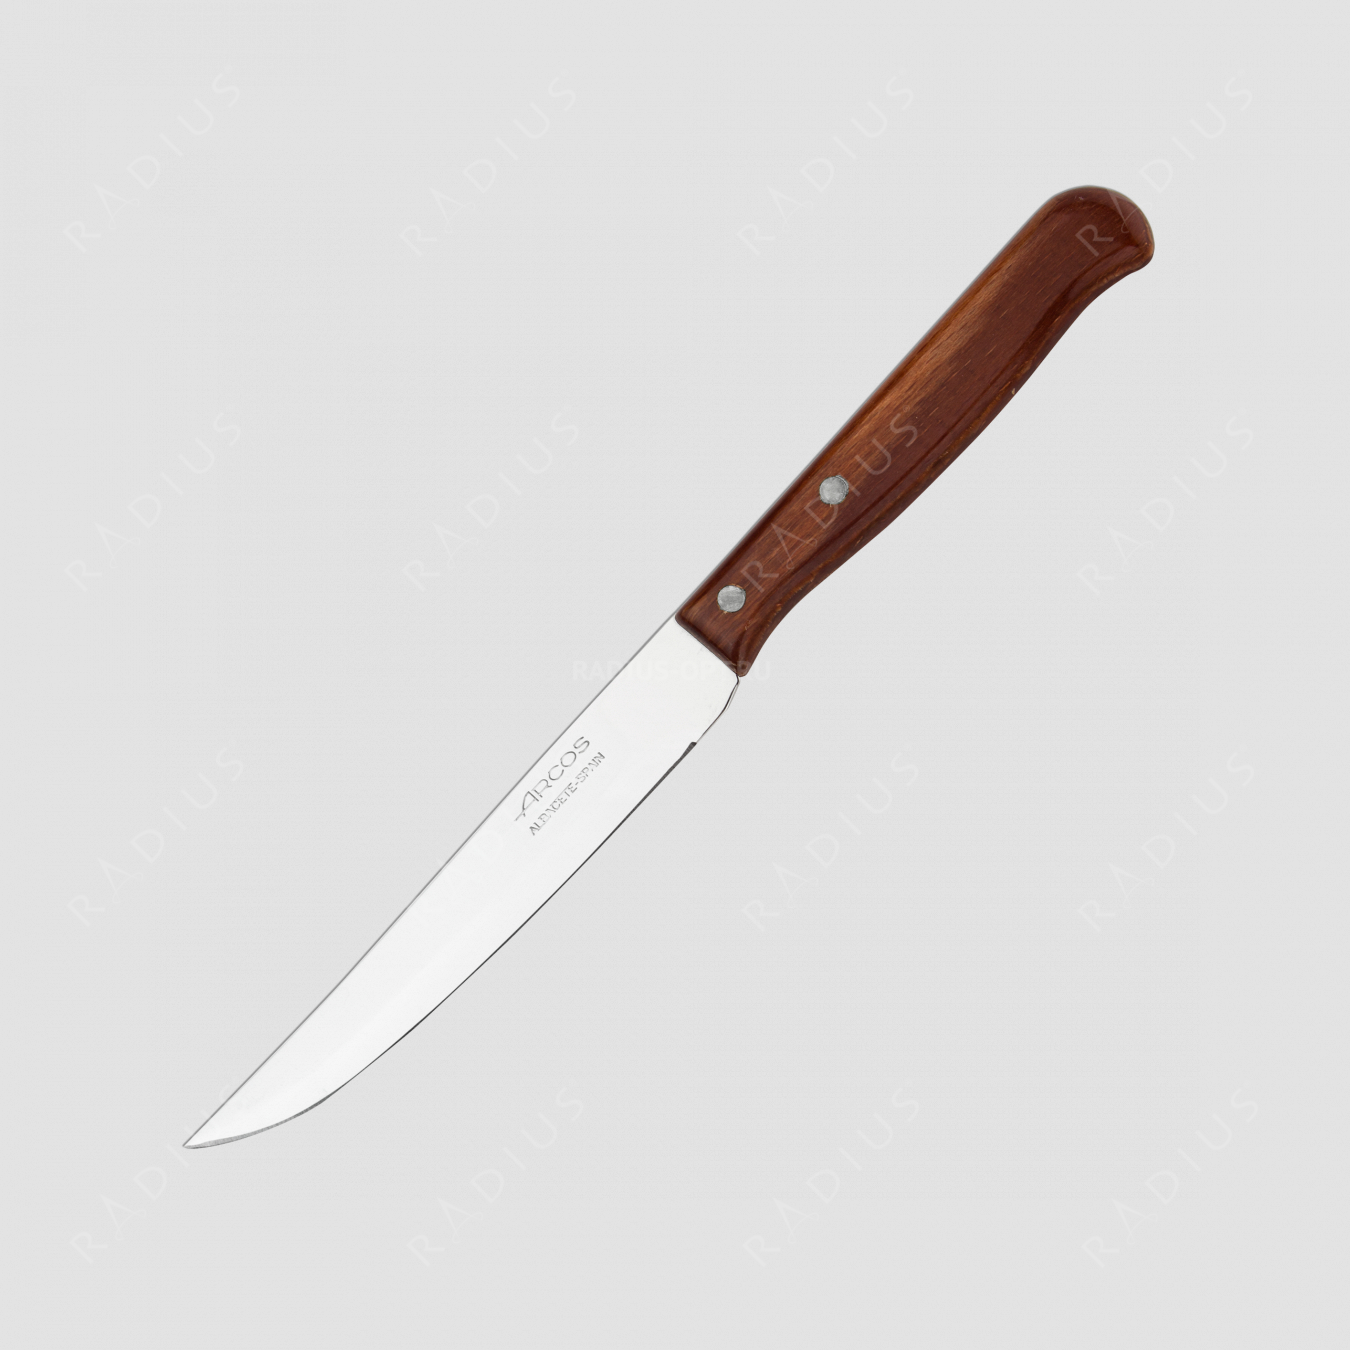 Нож кухонный овощной 10,5 см, серия Latina, ARCOS, Испания